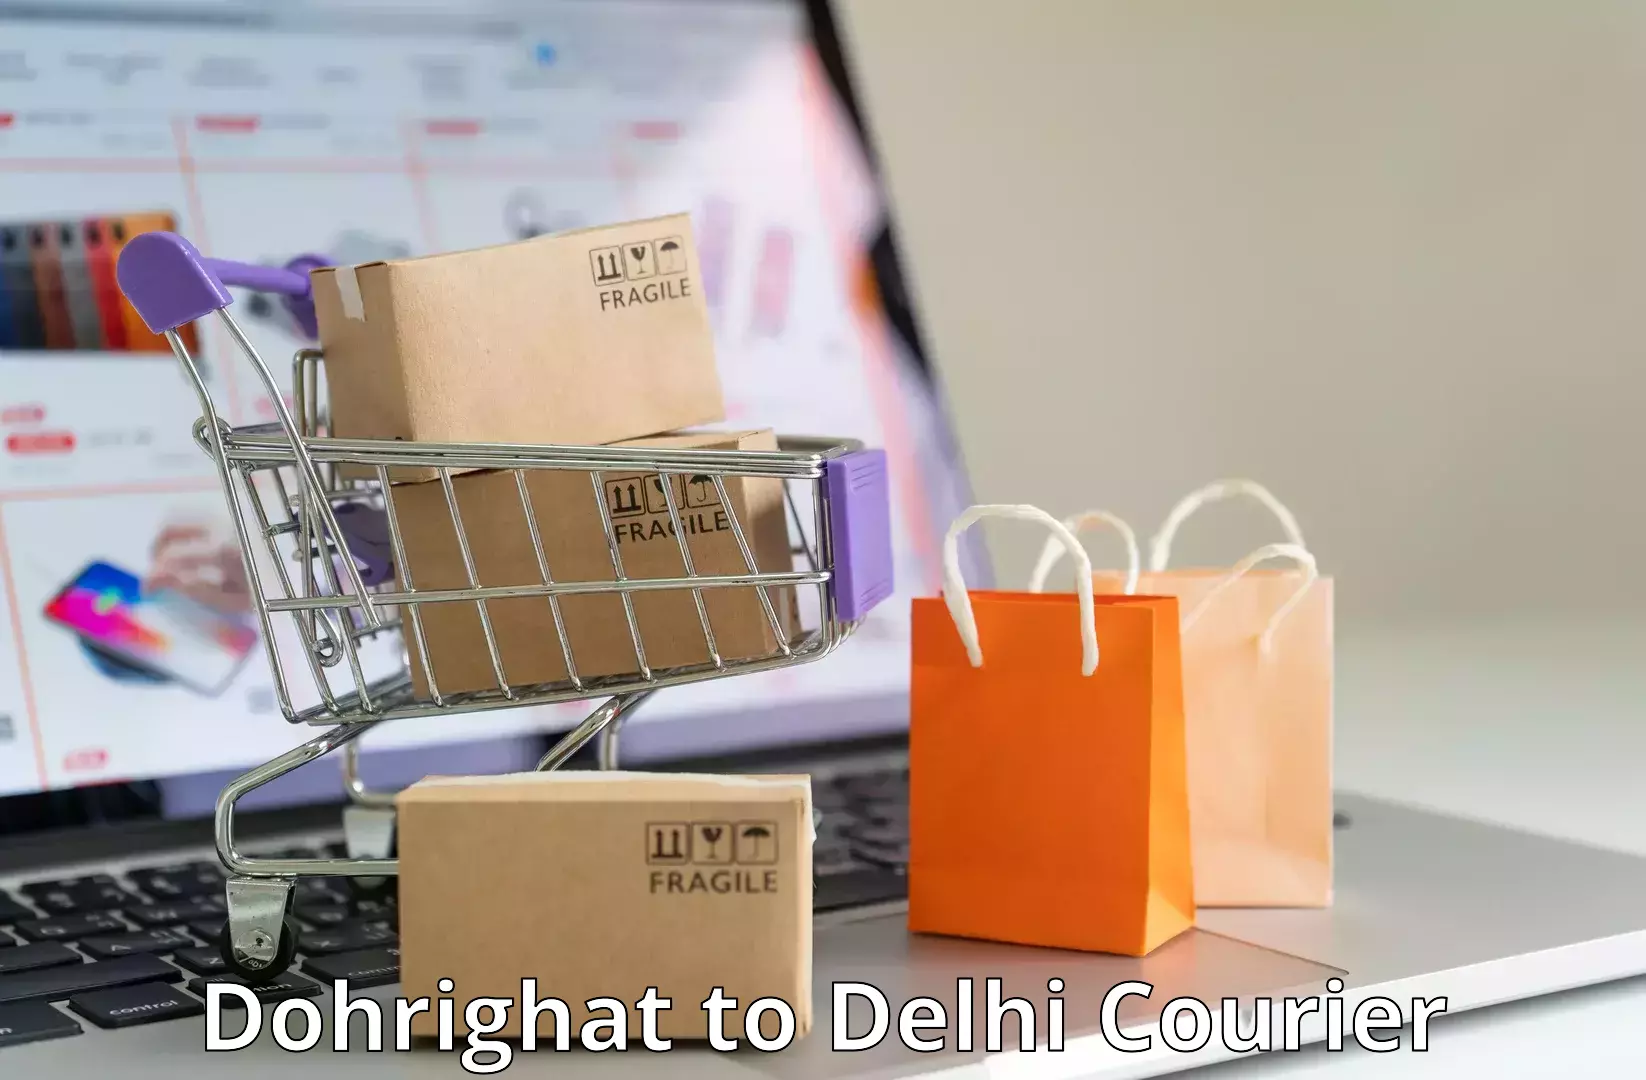 Next-day freight services Dohrighat to Jamia Millia Islamia New Delhi